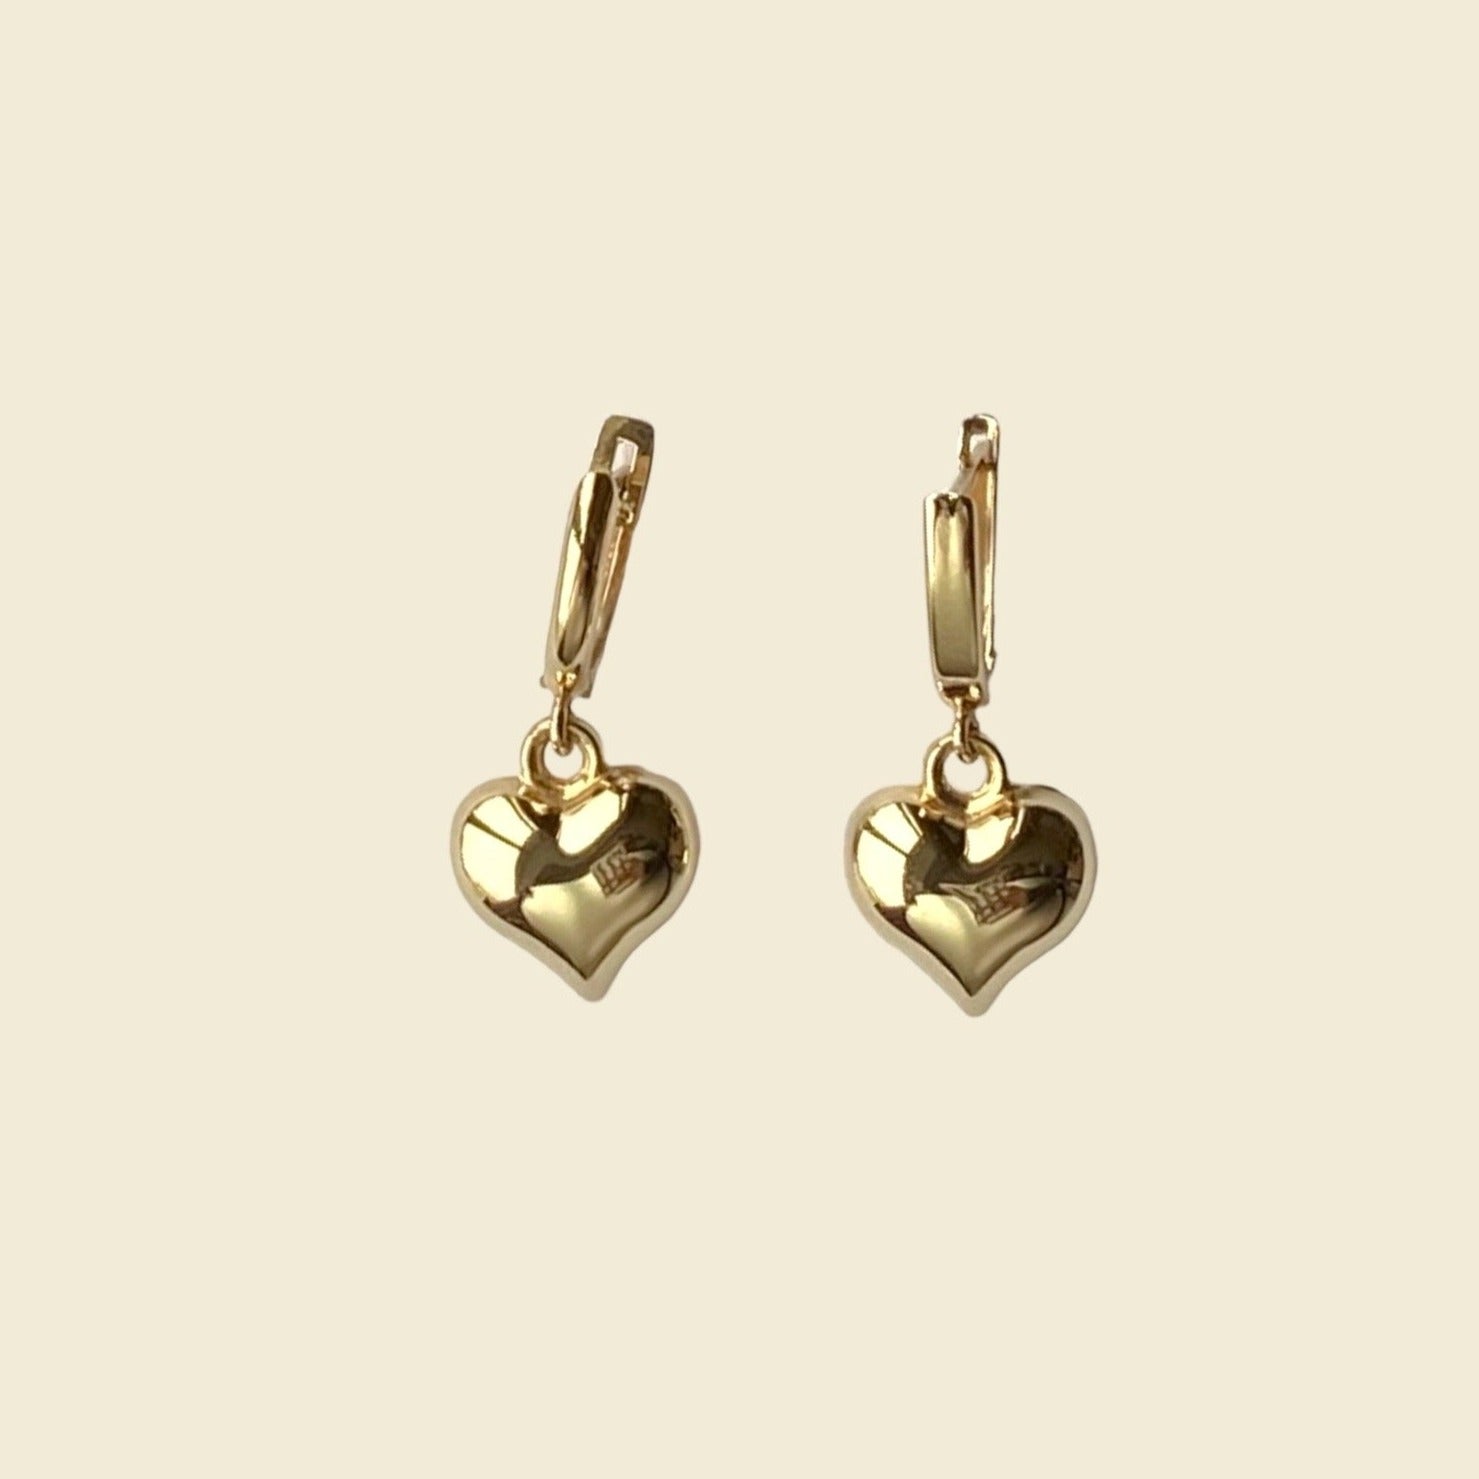 Aurora 14k Gold Earrings - iriss studio - earrings